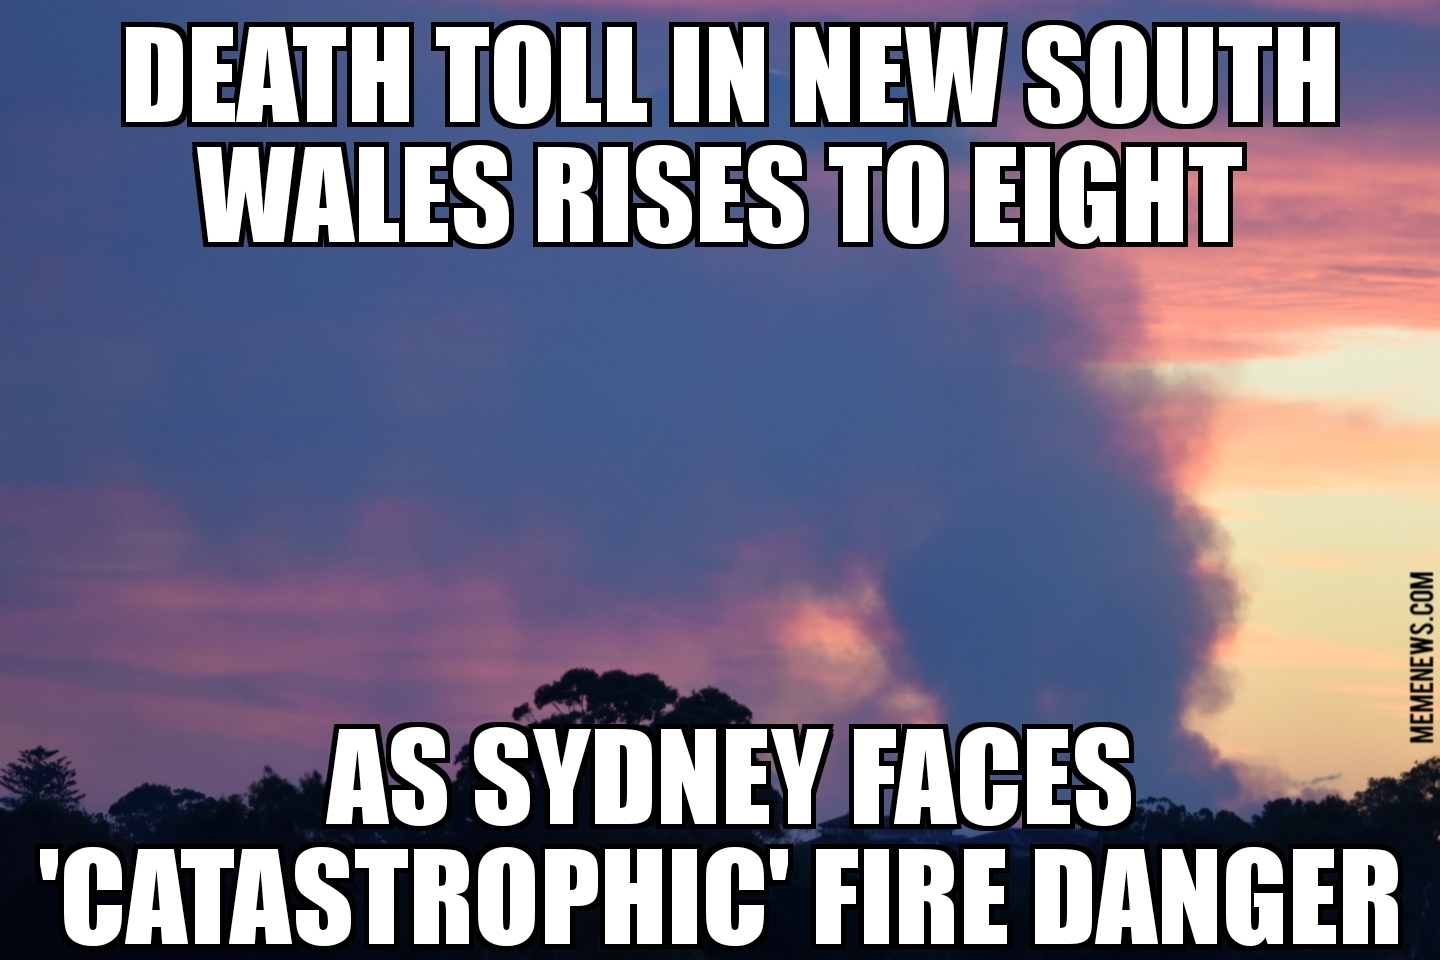 Sydney faces ‘catastrophic’ fire danger